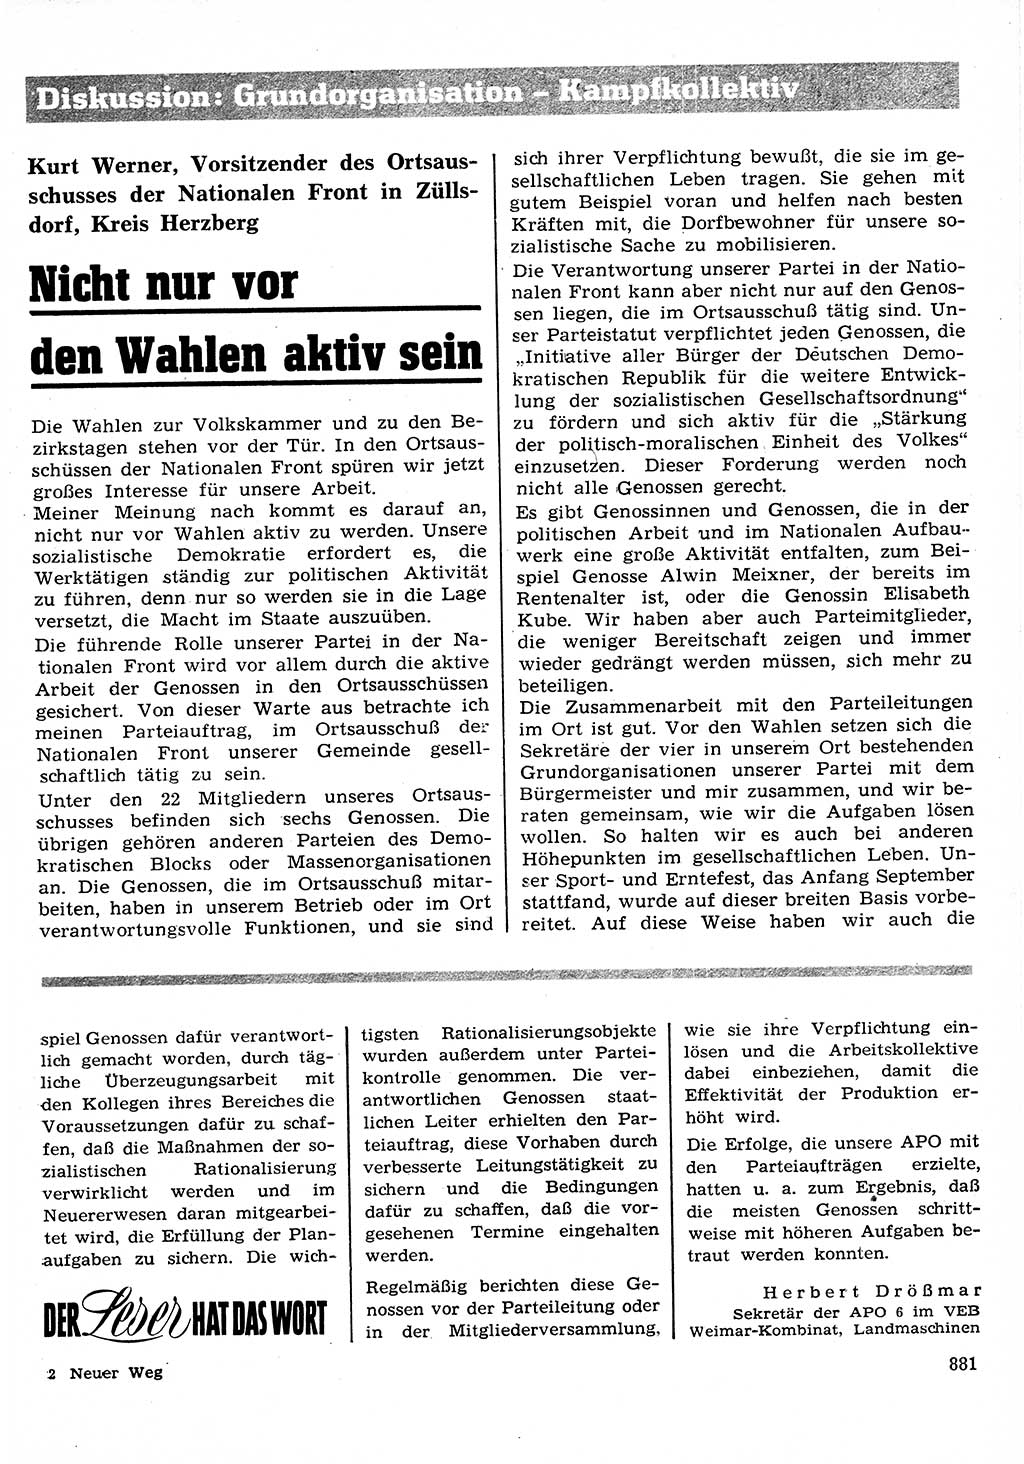 Neuer Weg (NW), Organ des Zentralkomitees (ZK) der SED (Sozialistische Einheitspartei Deutschlands) für Fragen des Parteilebens, 26. Jahrgang [Deutsche Demokratische Republik (DDR)] 1971, Seite 881 (NW ZK SED DDR 1971, S. 881)